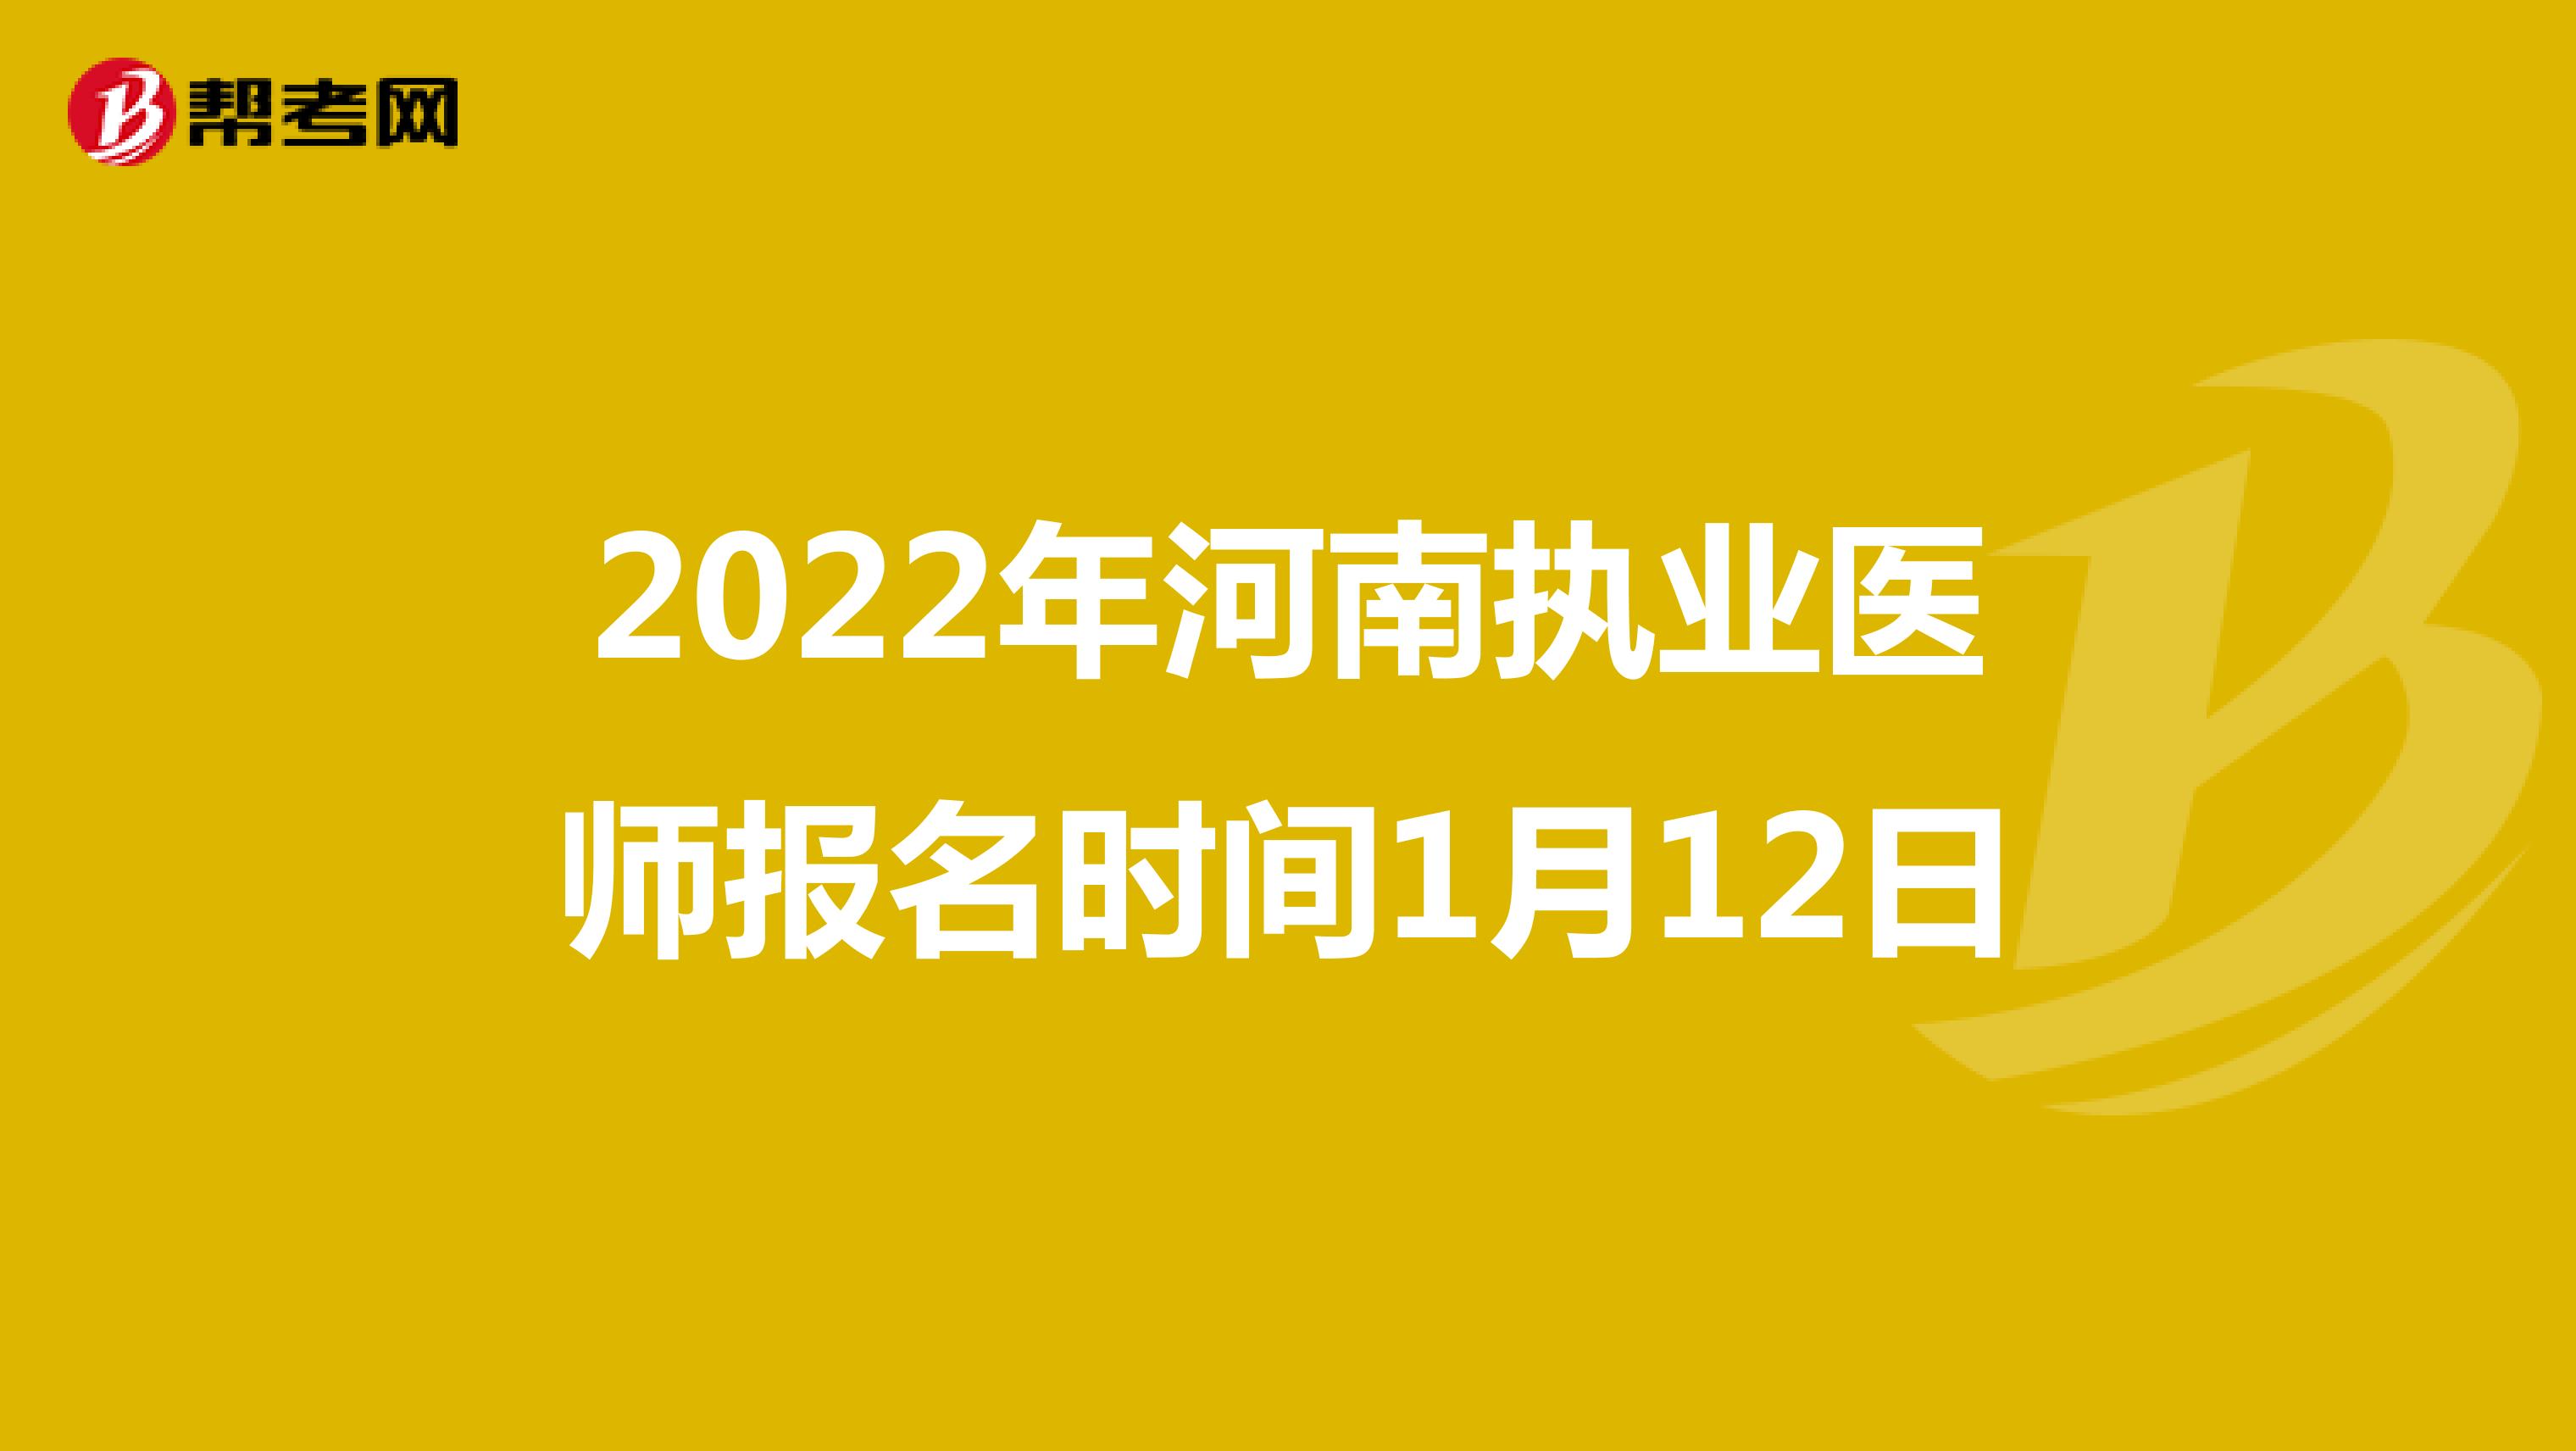 2022年河南执业医师报名时间1月12日